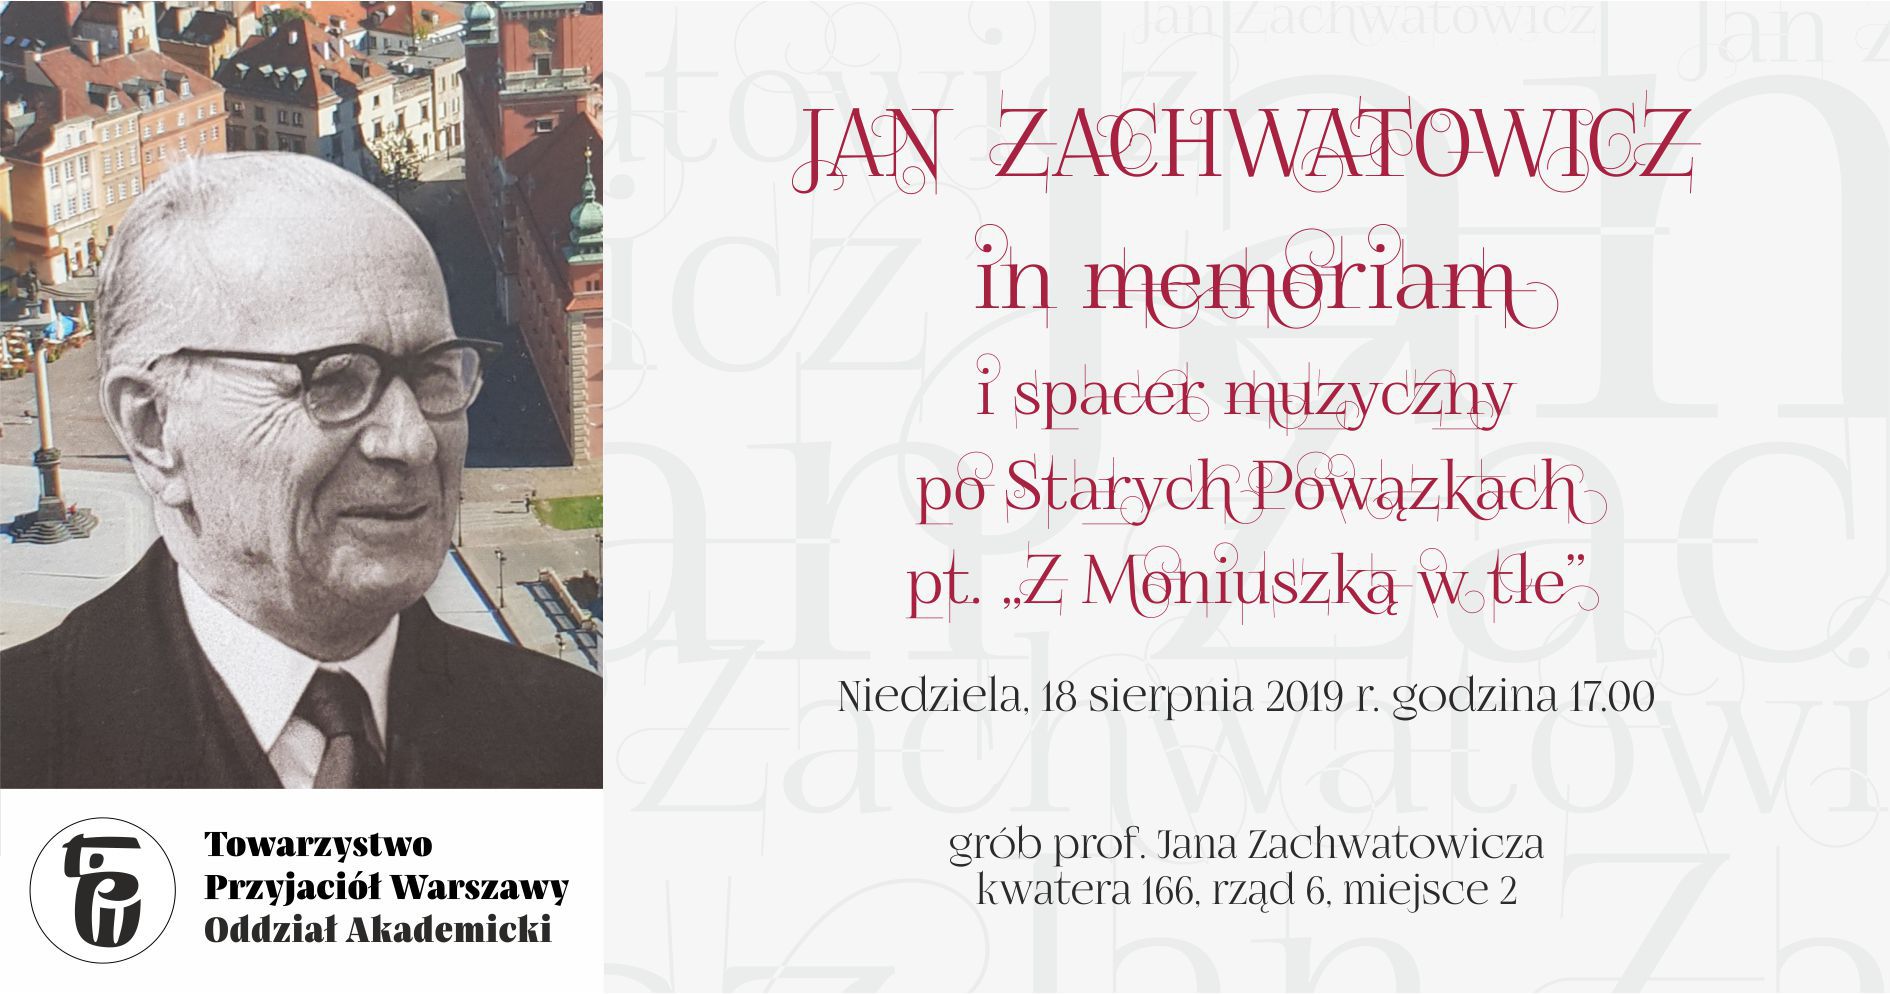 Jan Zachwatowicz in memoriam i spacer muzyczny po Starych Powązkach